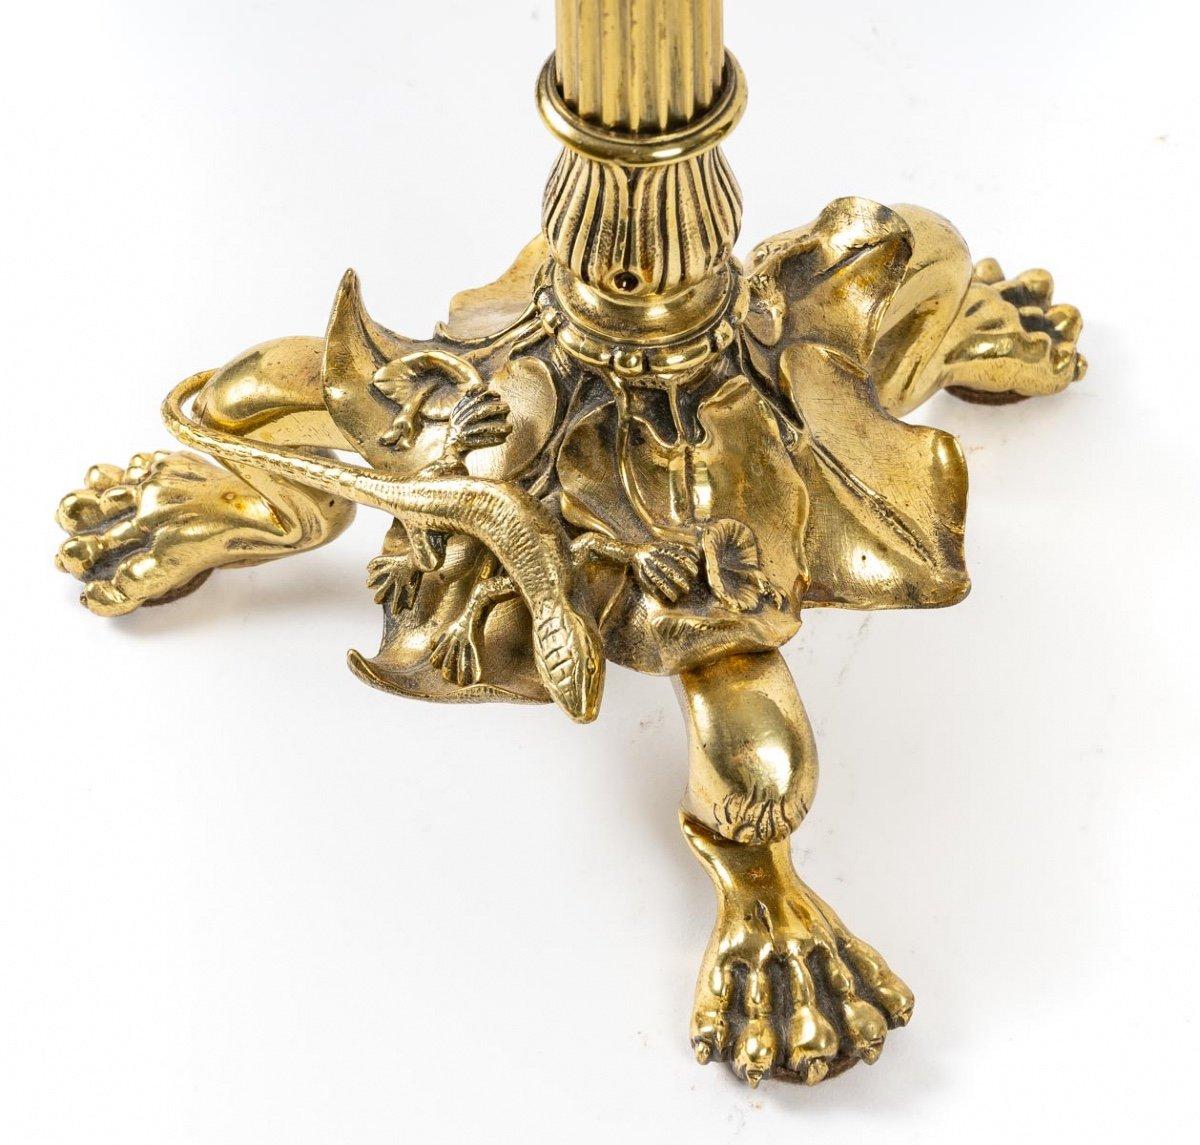 Hübsches Paar vergoldeter Bronzeleuchter, Ferdinand Barbedienne zugeschrieben.

Der dreibeinige Sockel in Form von Löwentatzen wird von einem Kragen aus Wasservegetation gekrönt, in dem ein Salamander umherwandert.

Auf dem geriffelten, eleganten